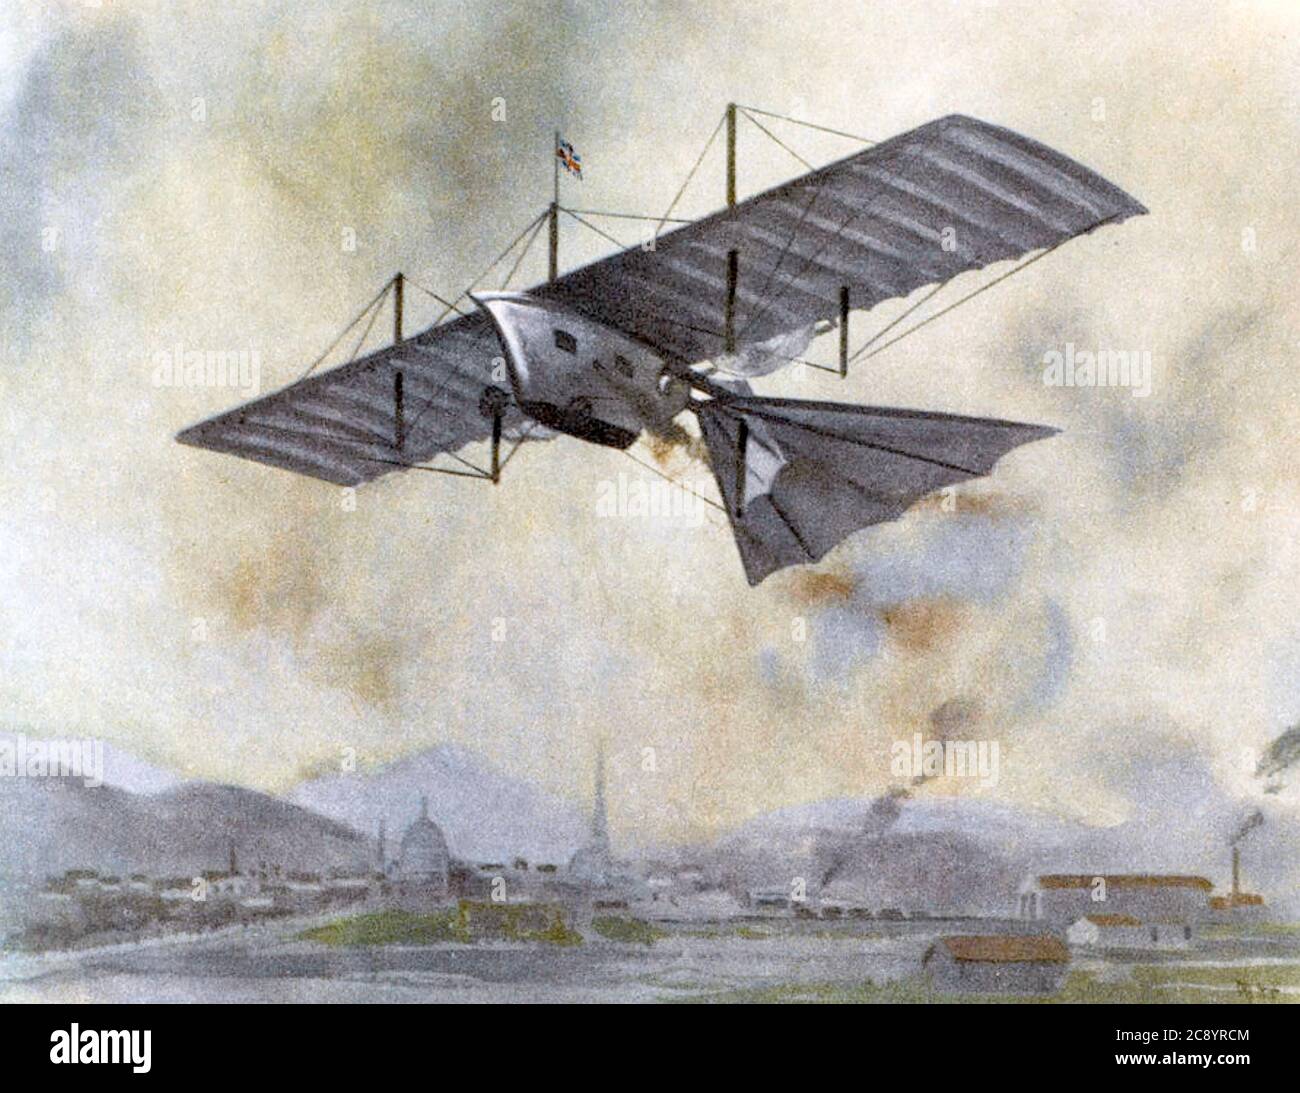 WILLIAM HENSON (1812-1888) englischer Luftfahrtpionier, der zusammen mit John Stringfellow eine Ariel Steam Carriage entwarf. Es flog nie. Stockfoto